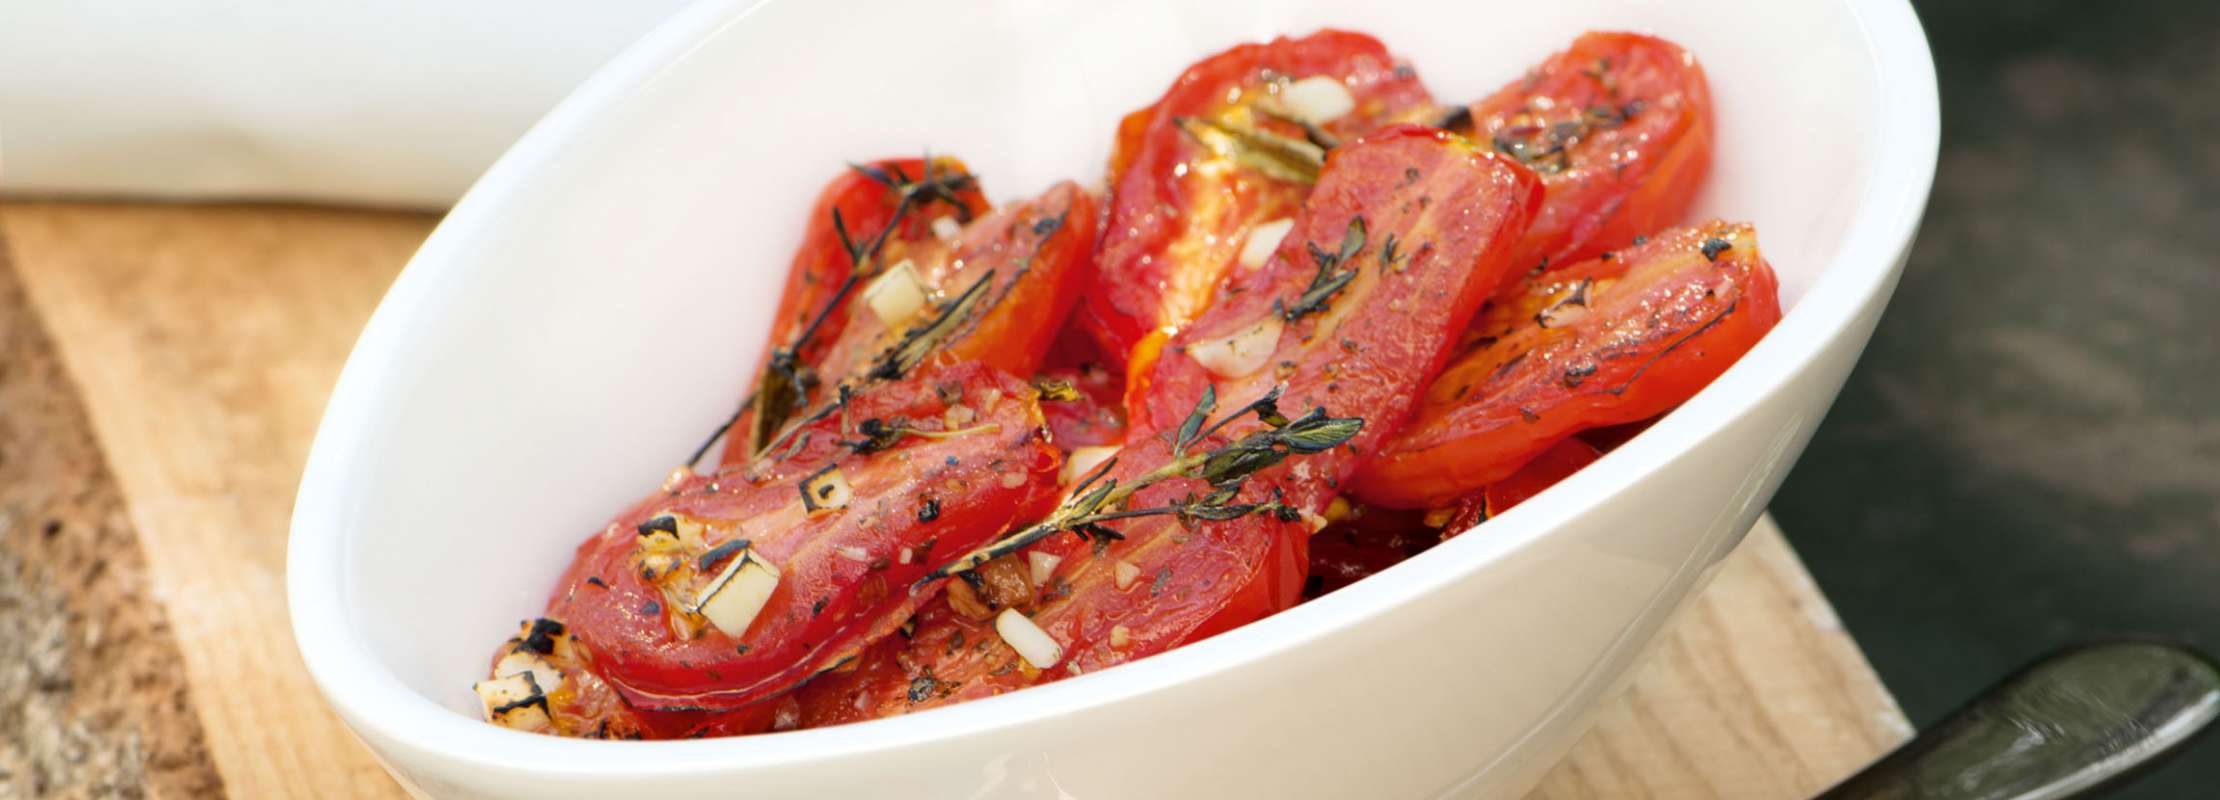 Gegrillte Tomaten - Jetzt kann der Sommer kommen | TrendXPRESS